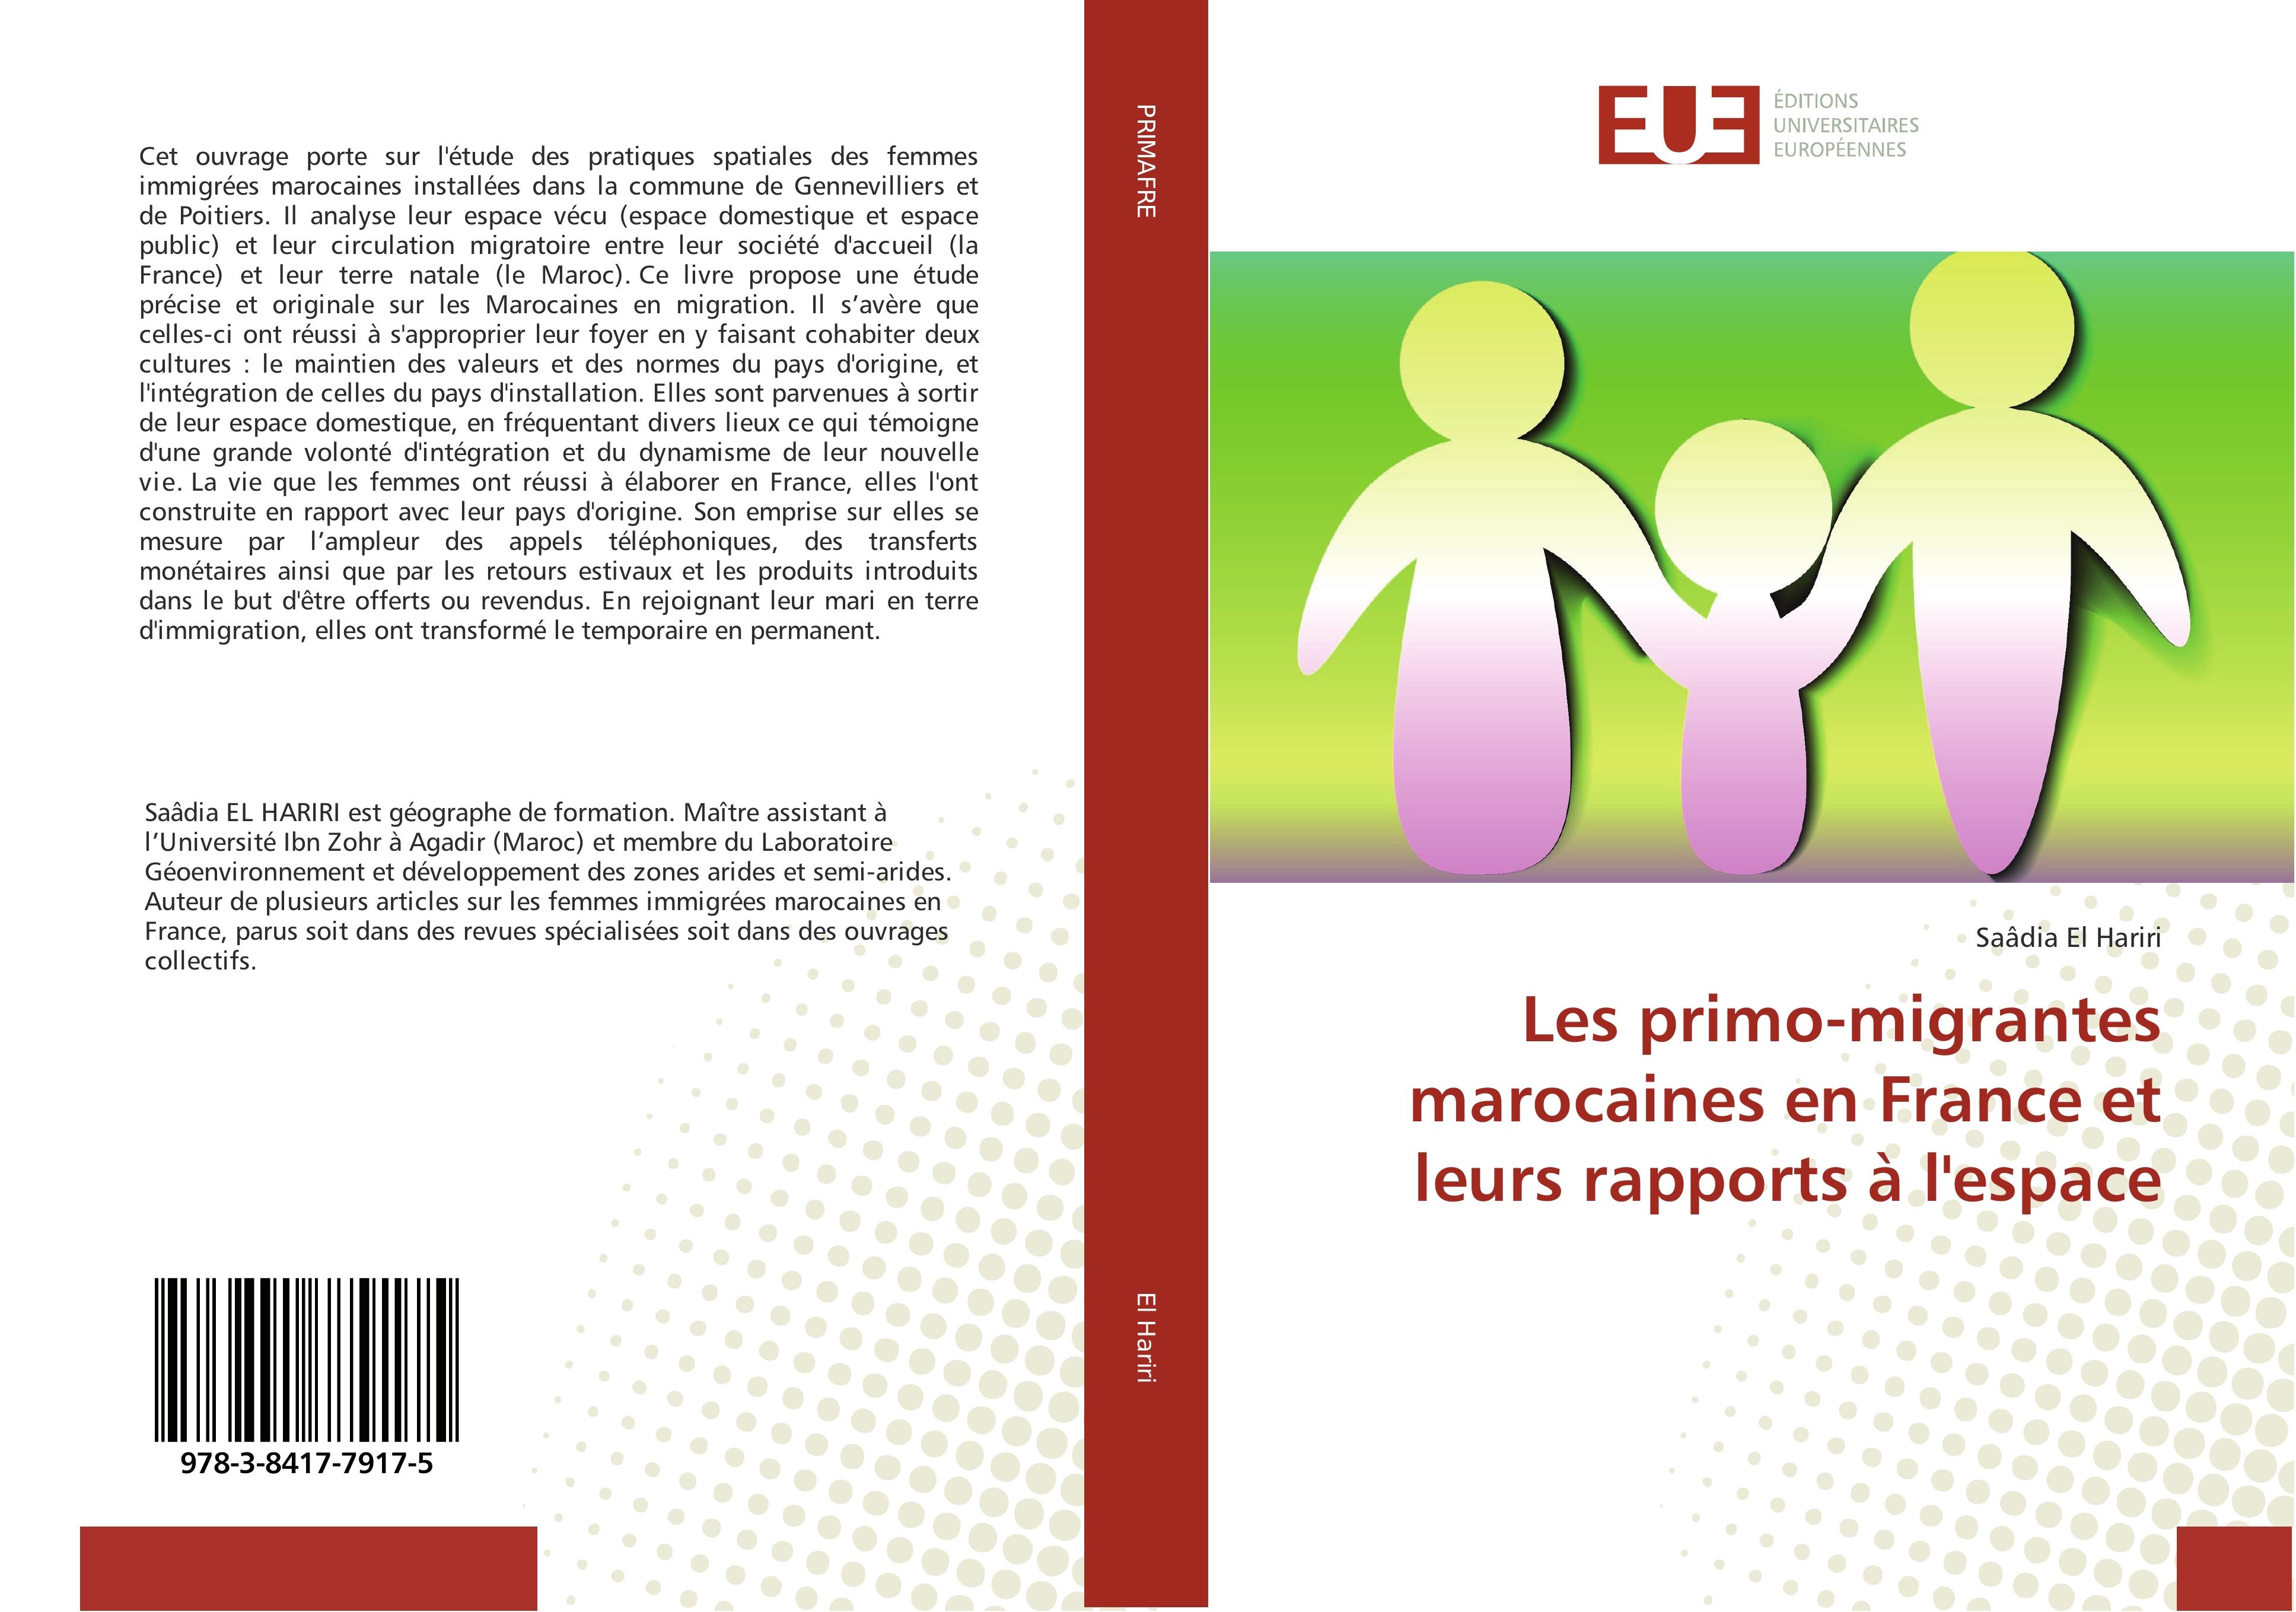 Les primo-migrantes marocaines en France et leurs rapports Ã  l'espace - SaÃ¢dia El Hariri